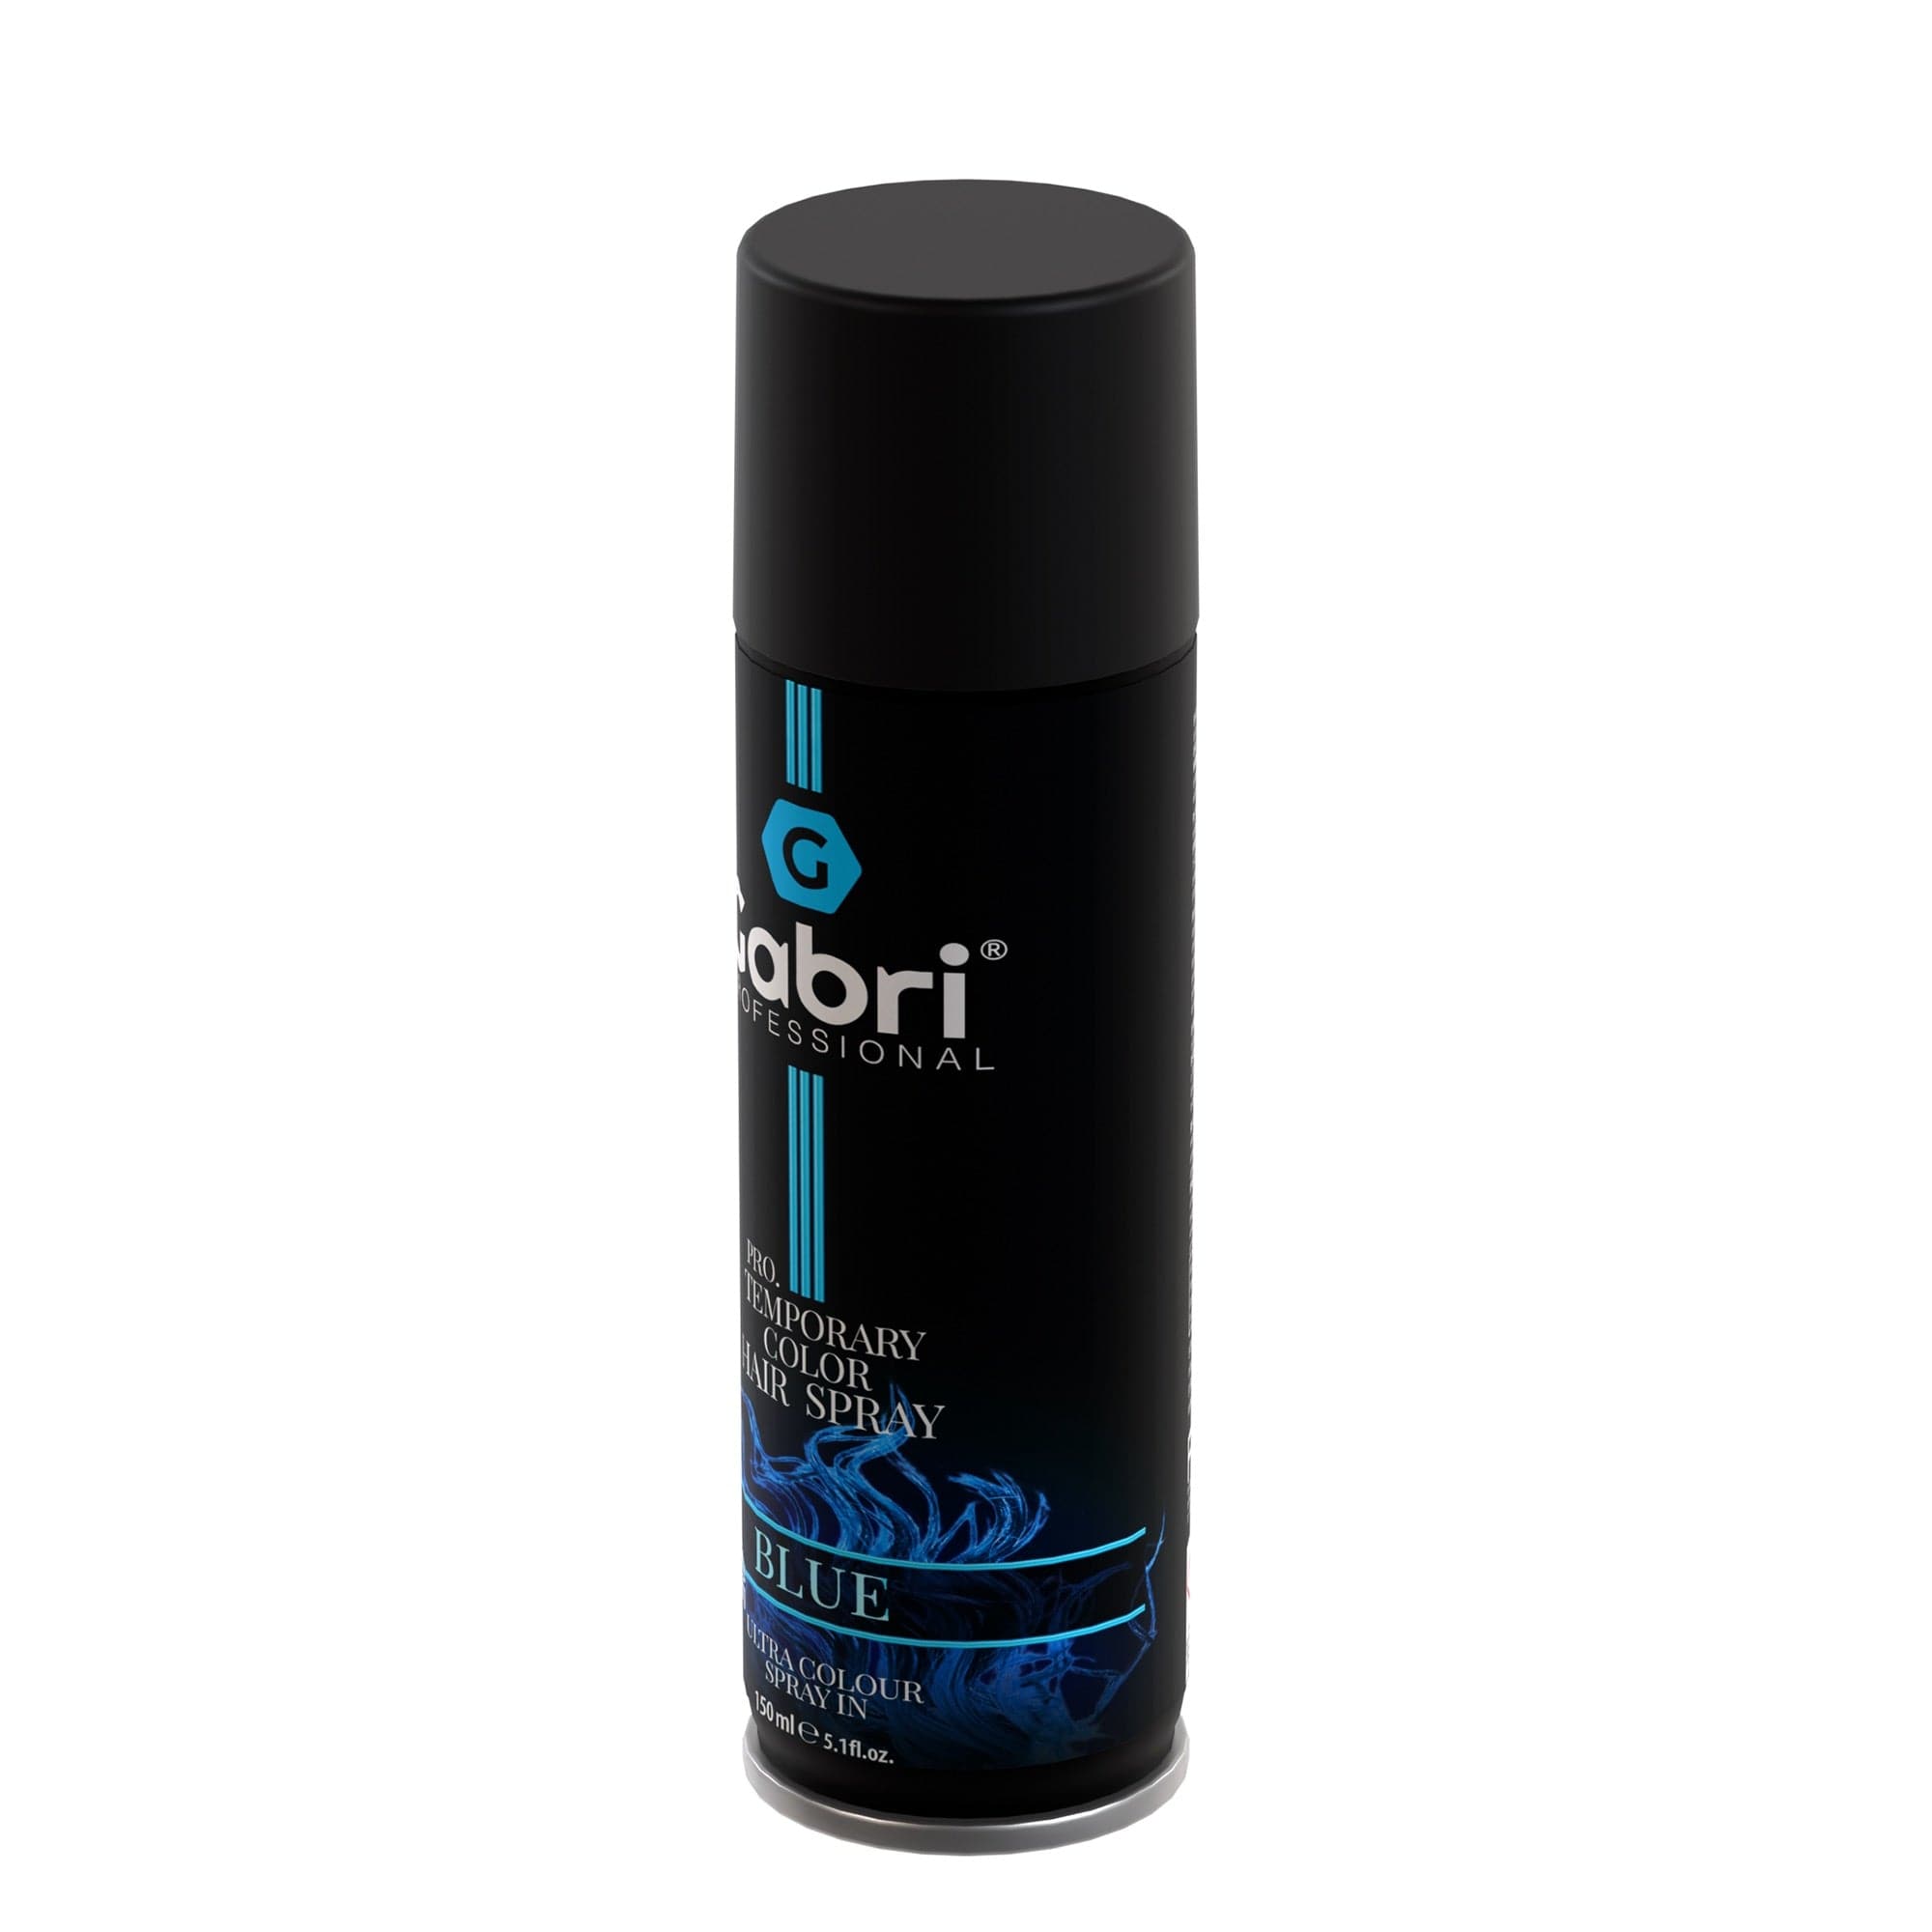 Gabri Professional - Temporary Hair Colour Dye Spray Blue 150ml